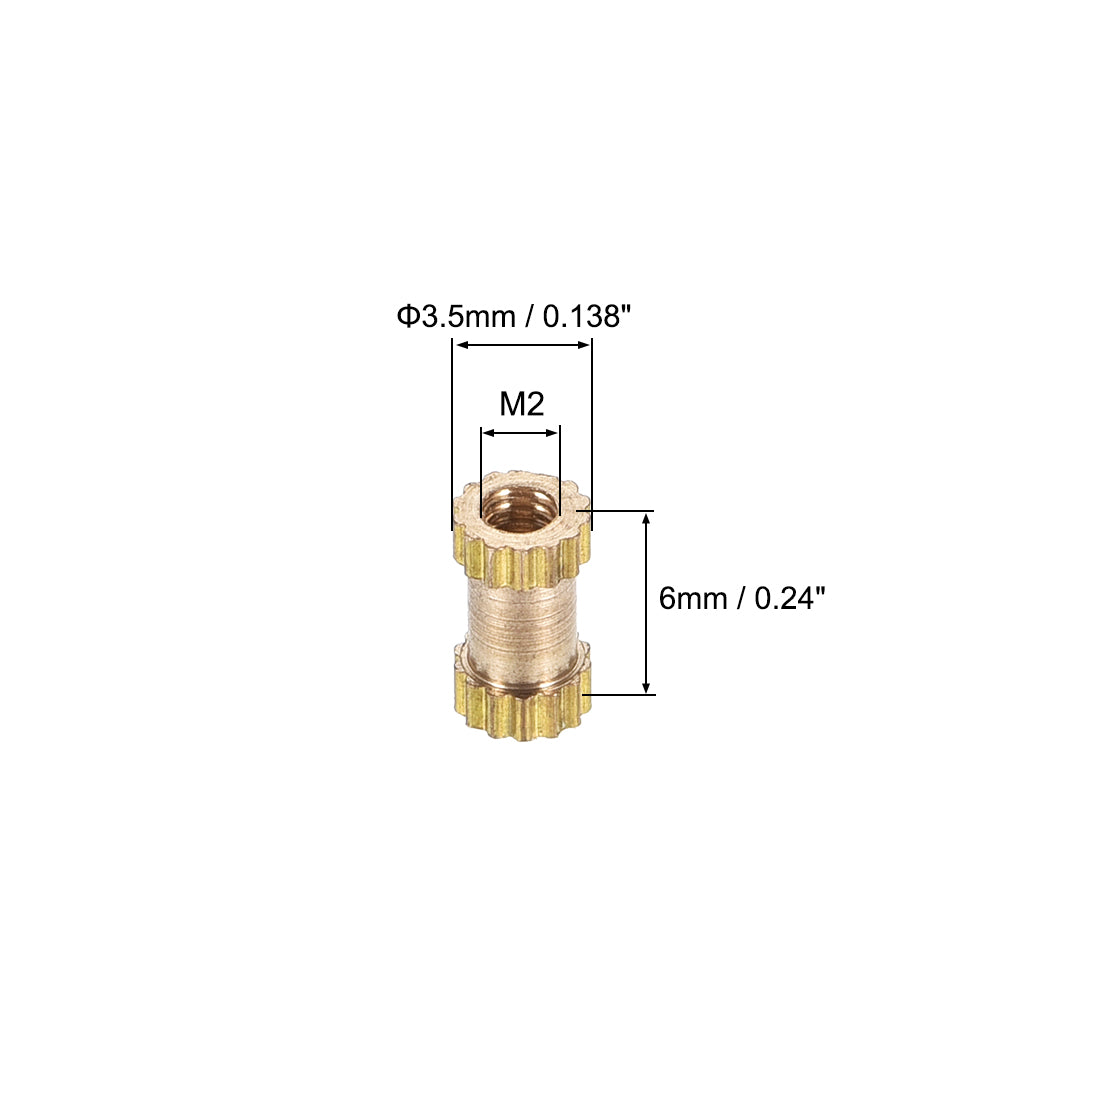 uxcell Uxcell Knurled Insert Nuts, M2 x 6mm(L) x 3.5mm(OD) Female Thread Brass Embedment Assortment Kit, 20 Pcs